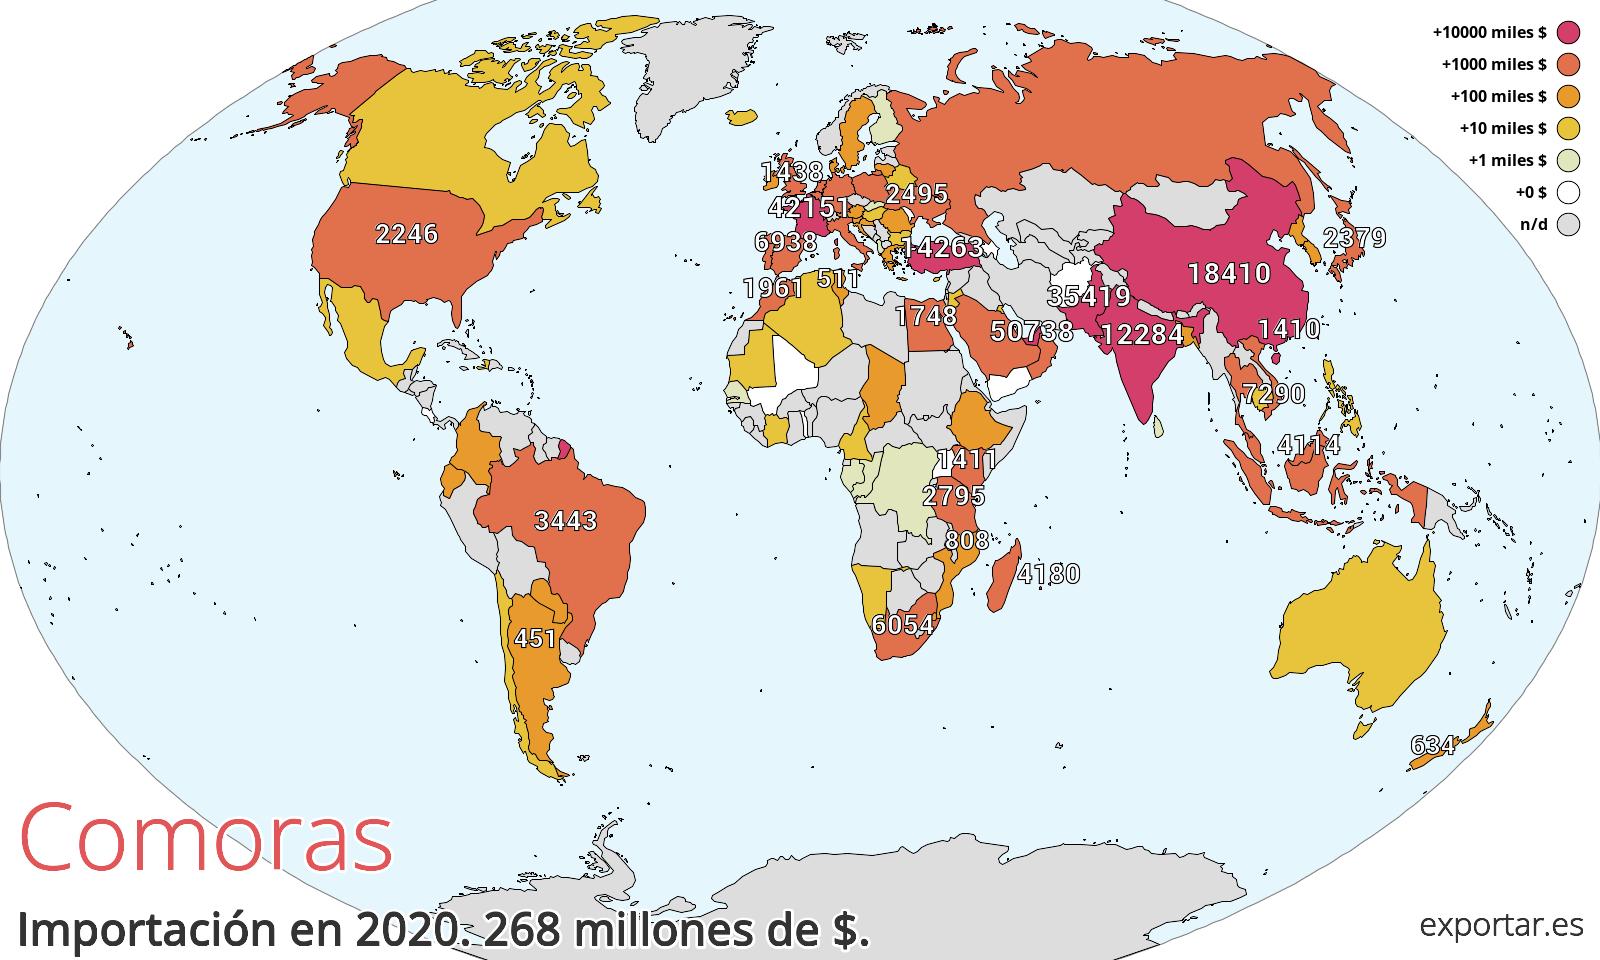 Mapa de importación de Comoras en 2020.